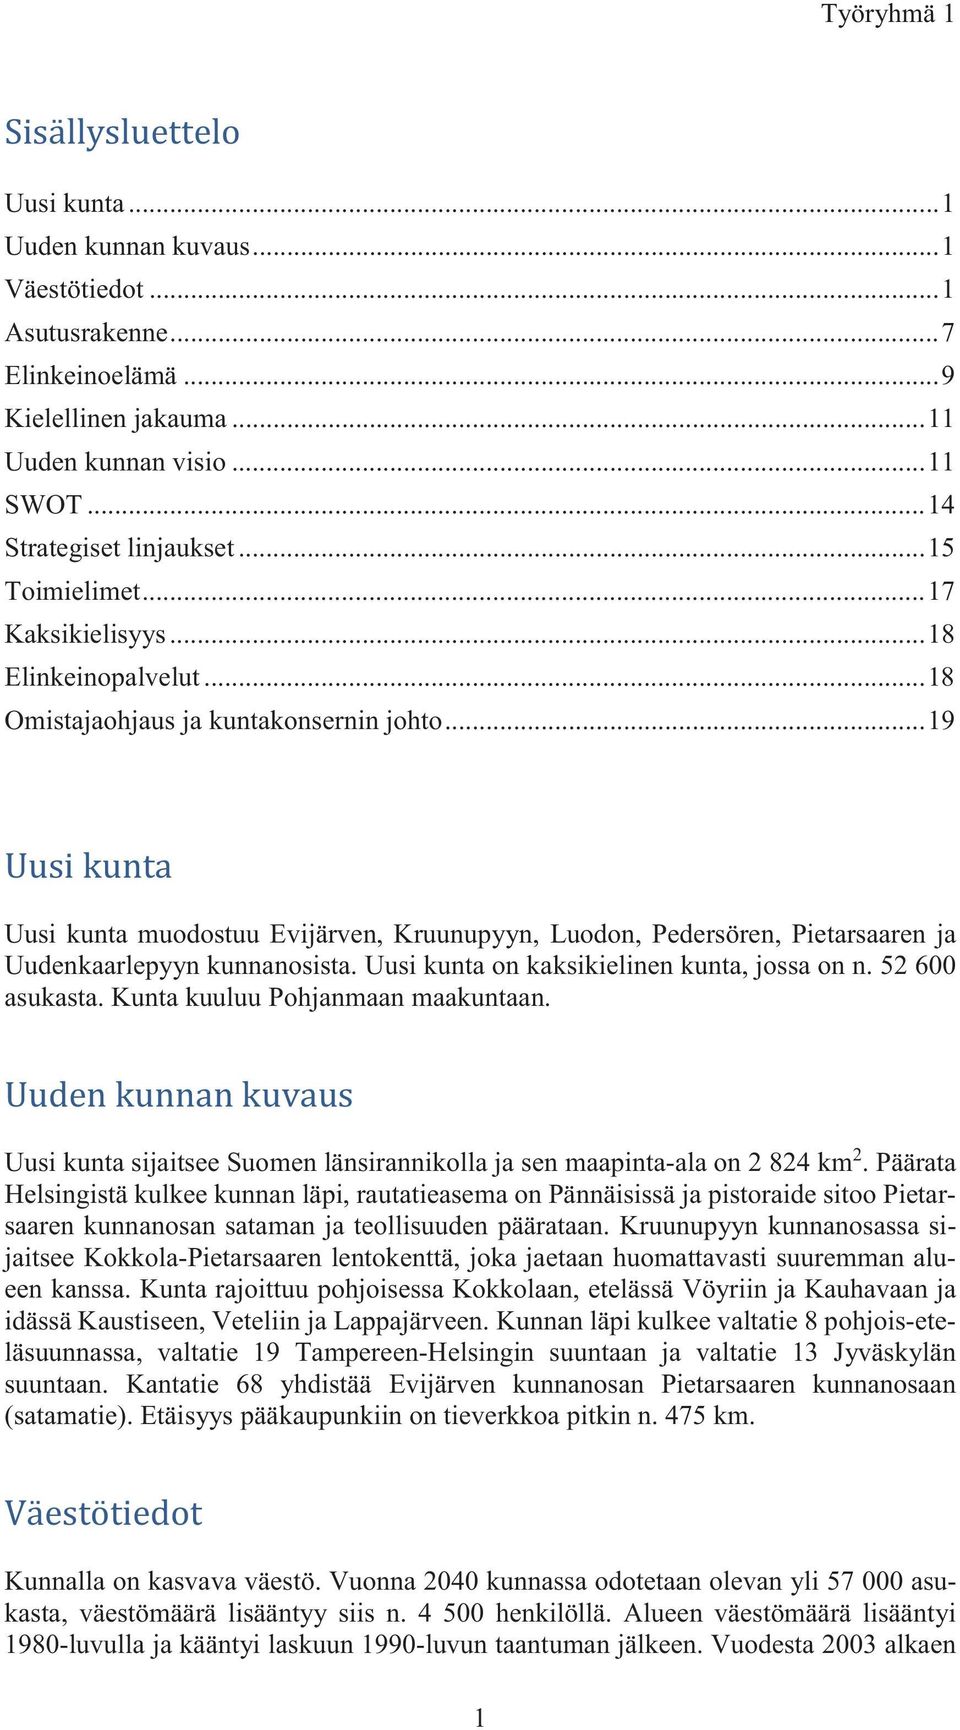 .. 19 Uusi kunta muodostuu Evijärven, Kruunupyyn, Luodon, Pedersören, Pietarsaaren ja Uudenkaarlepyyn kunnanosista. Uusi kunta on kaksikielinen kunta, jossa on n. 52 600 asukasta.